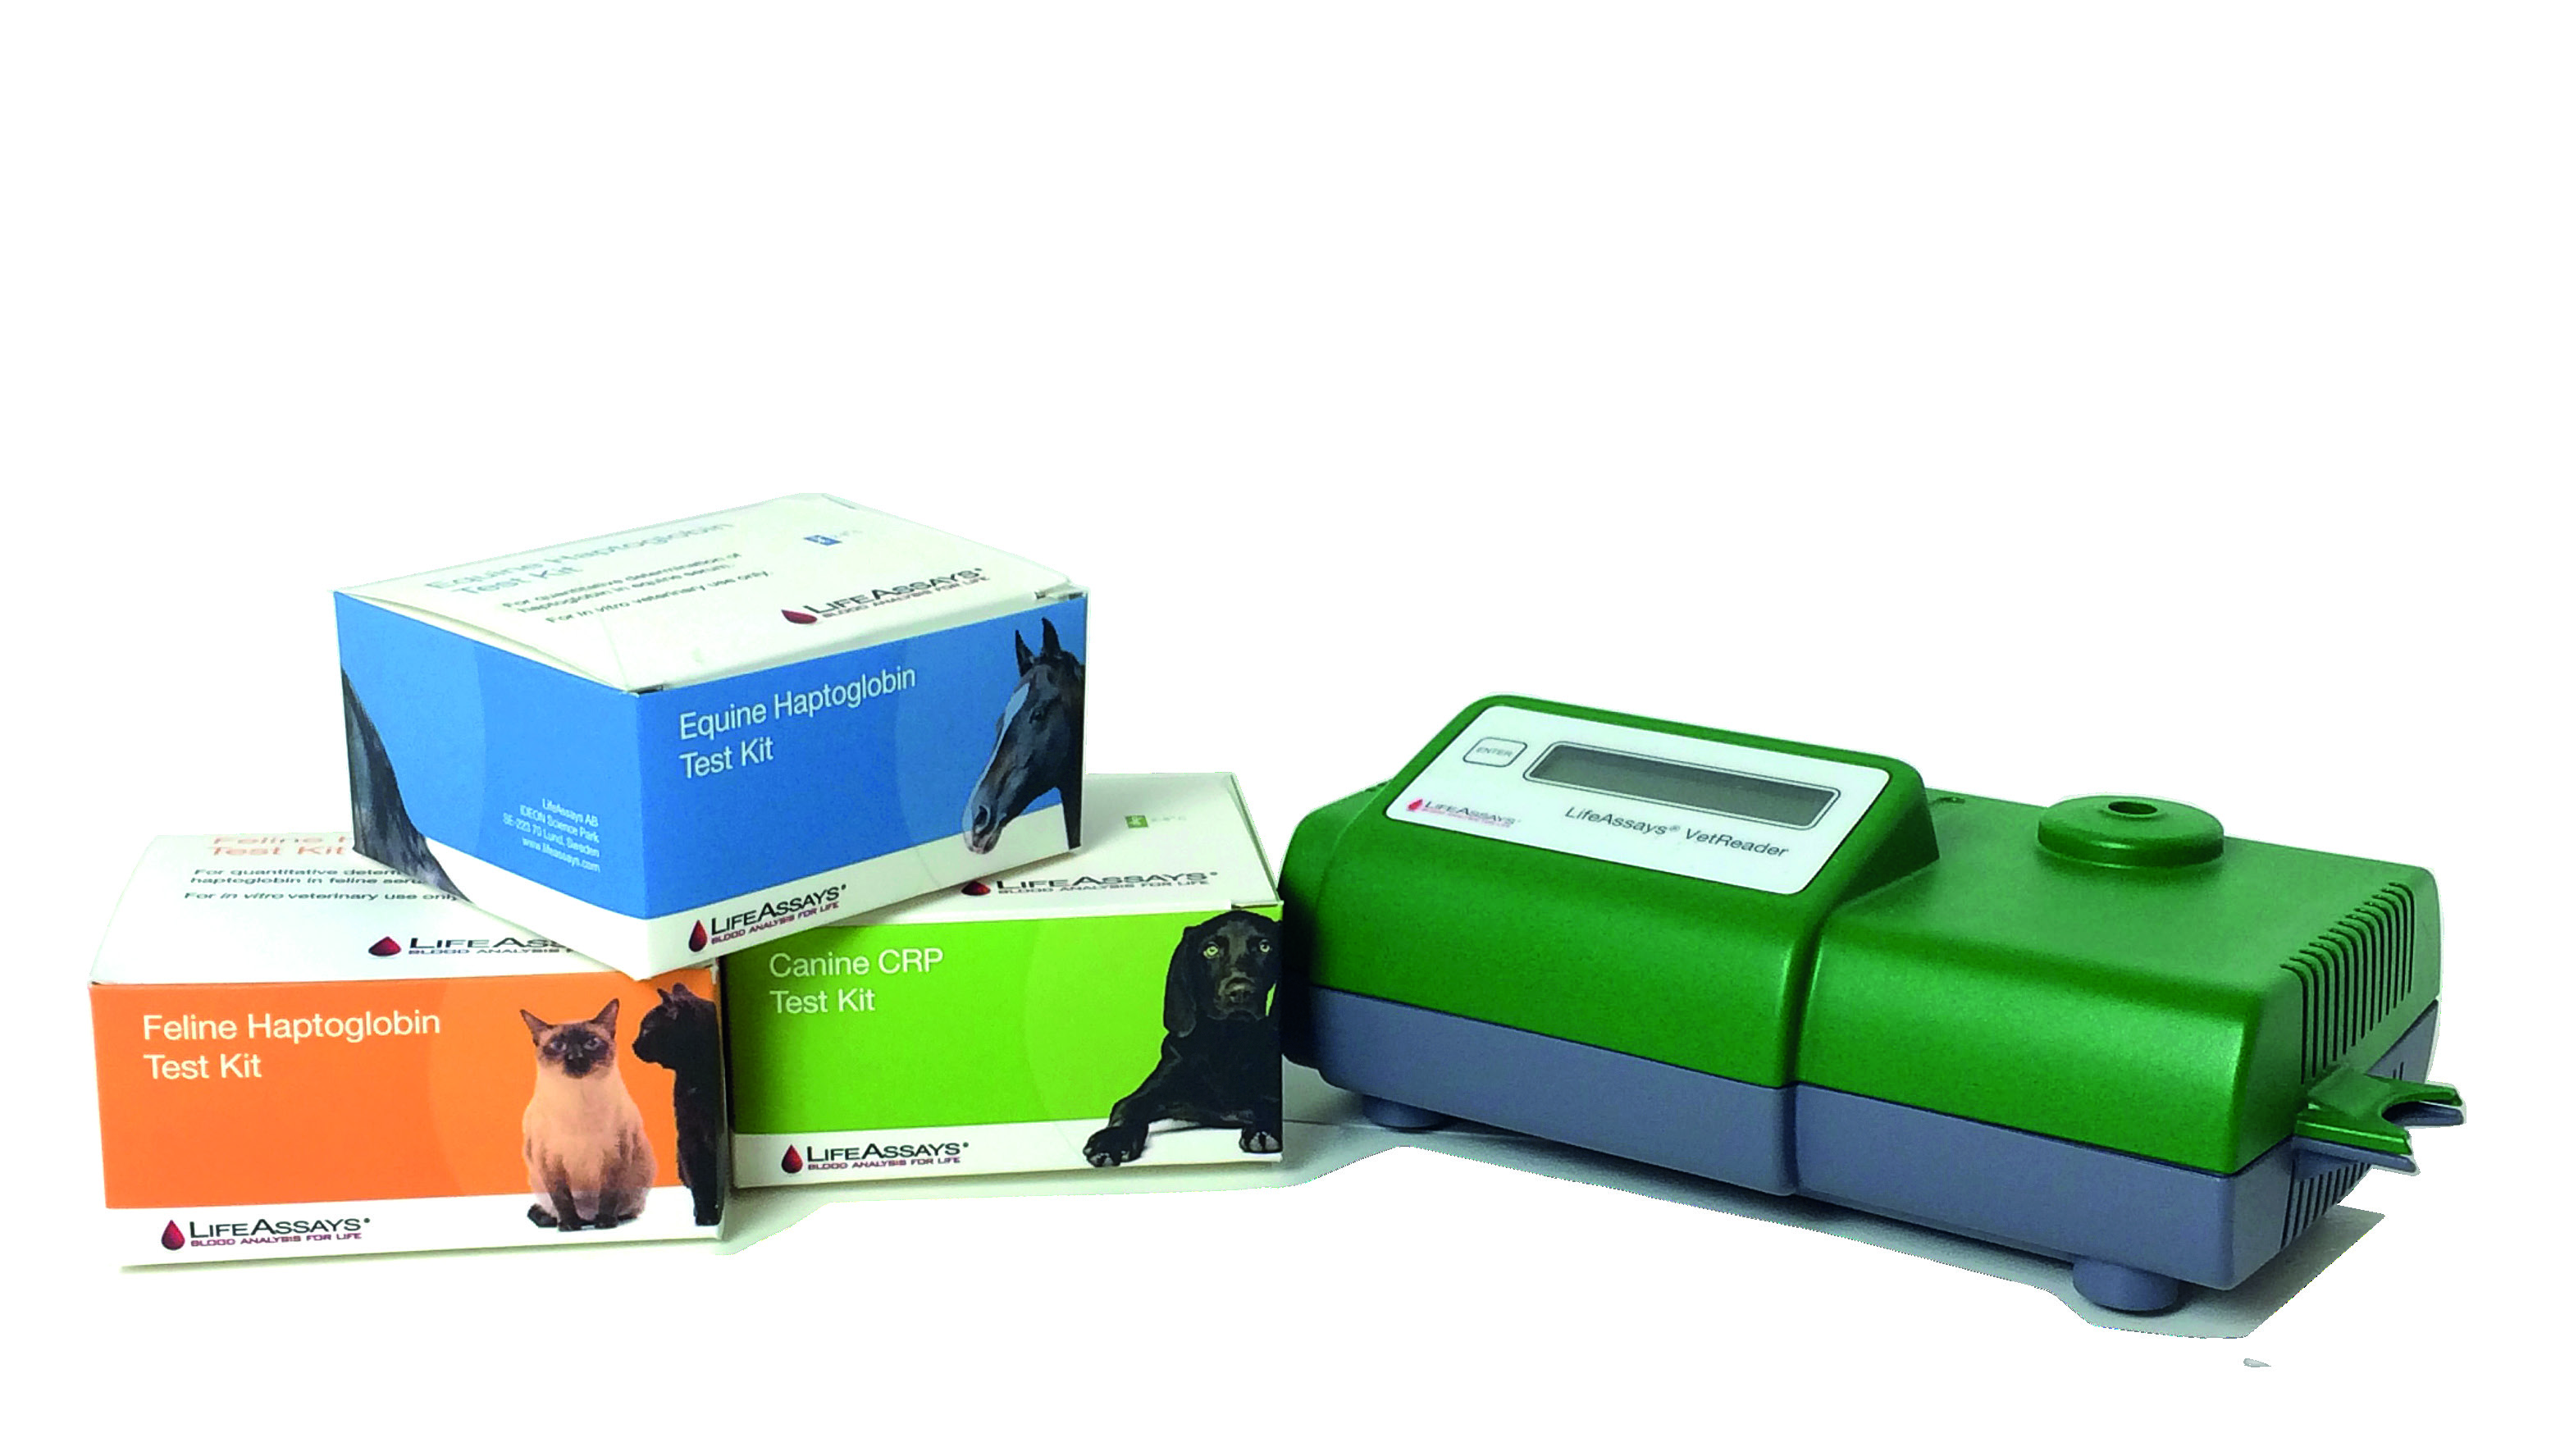 Produkter - 17 Produkter LifeAssays har utvecklat ett användarvänligt produktkoncept för veterinärmedicin, produkten består av ett analysinstrument och engångstester.